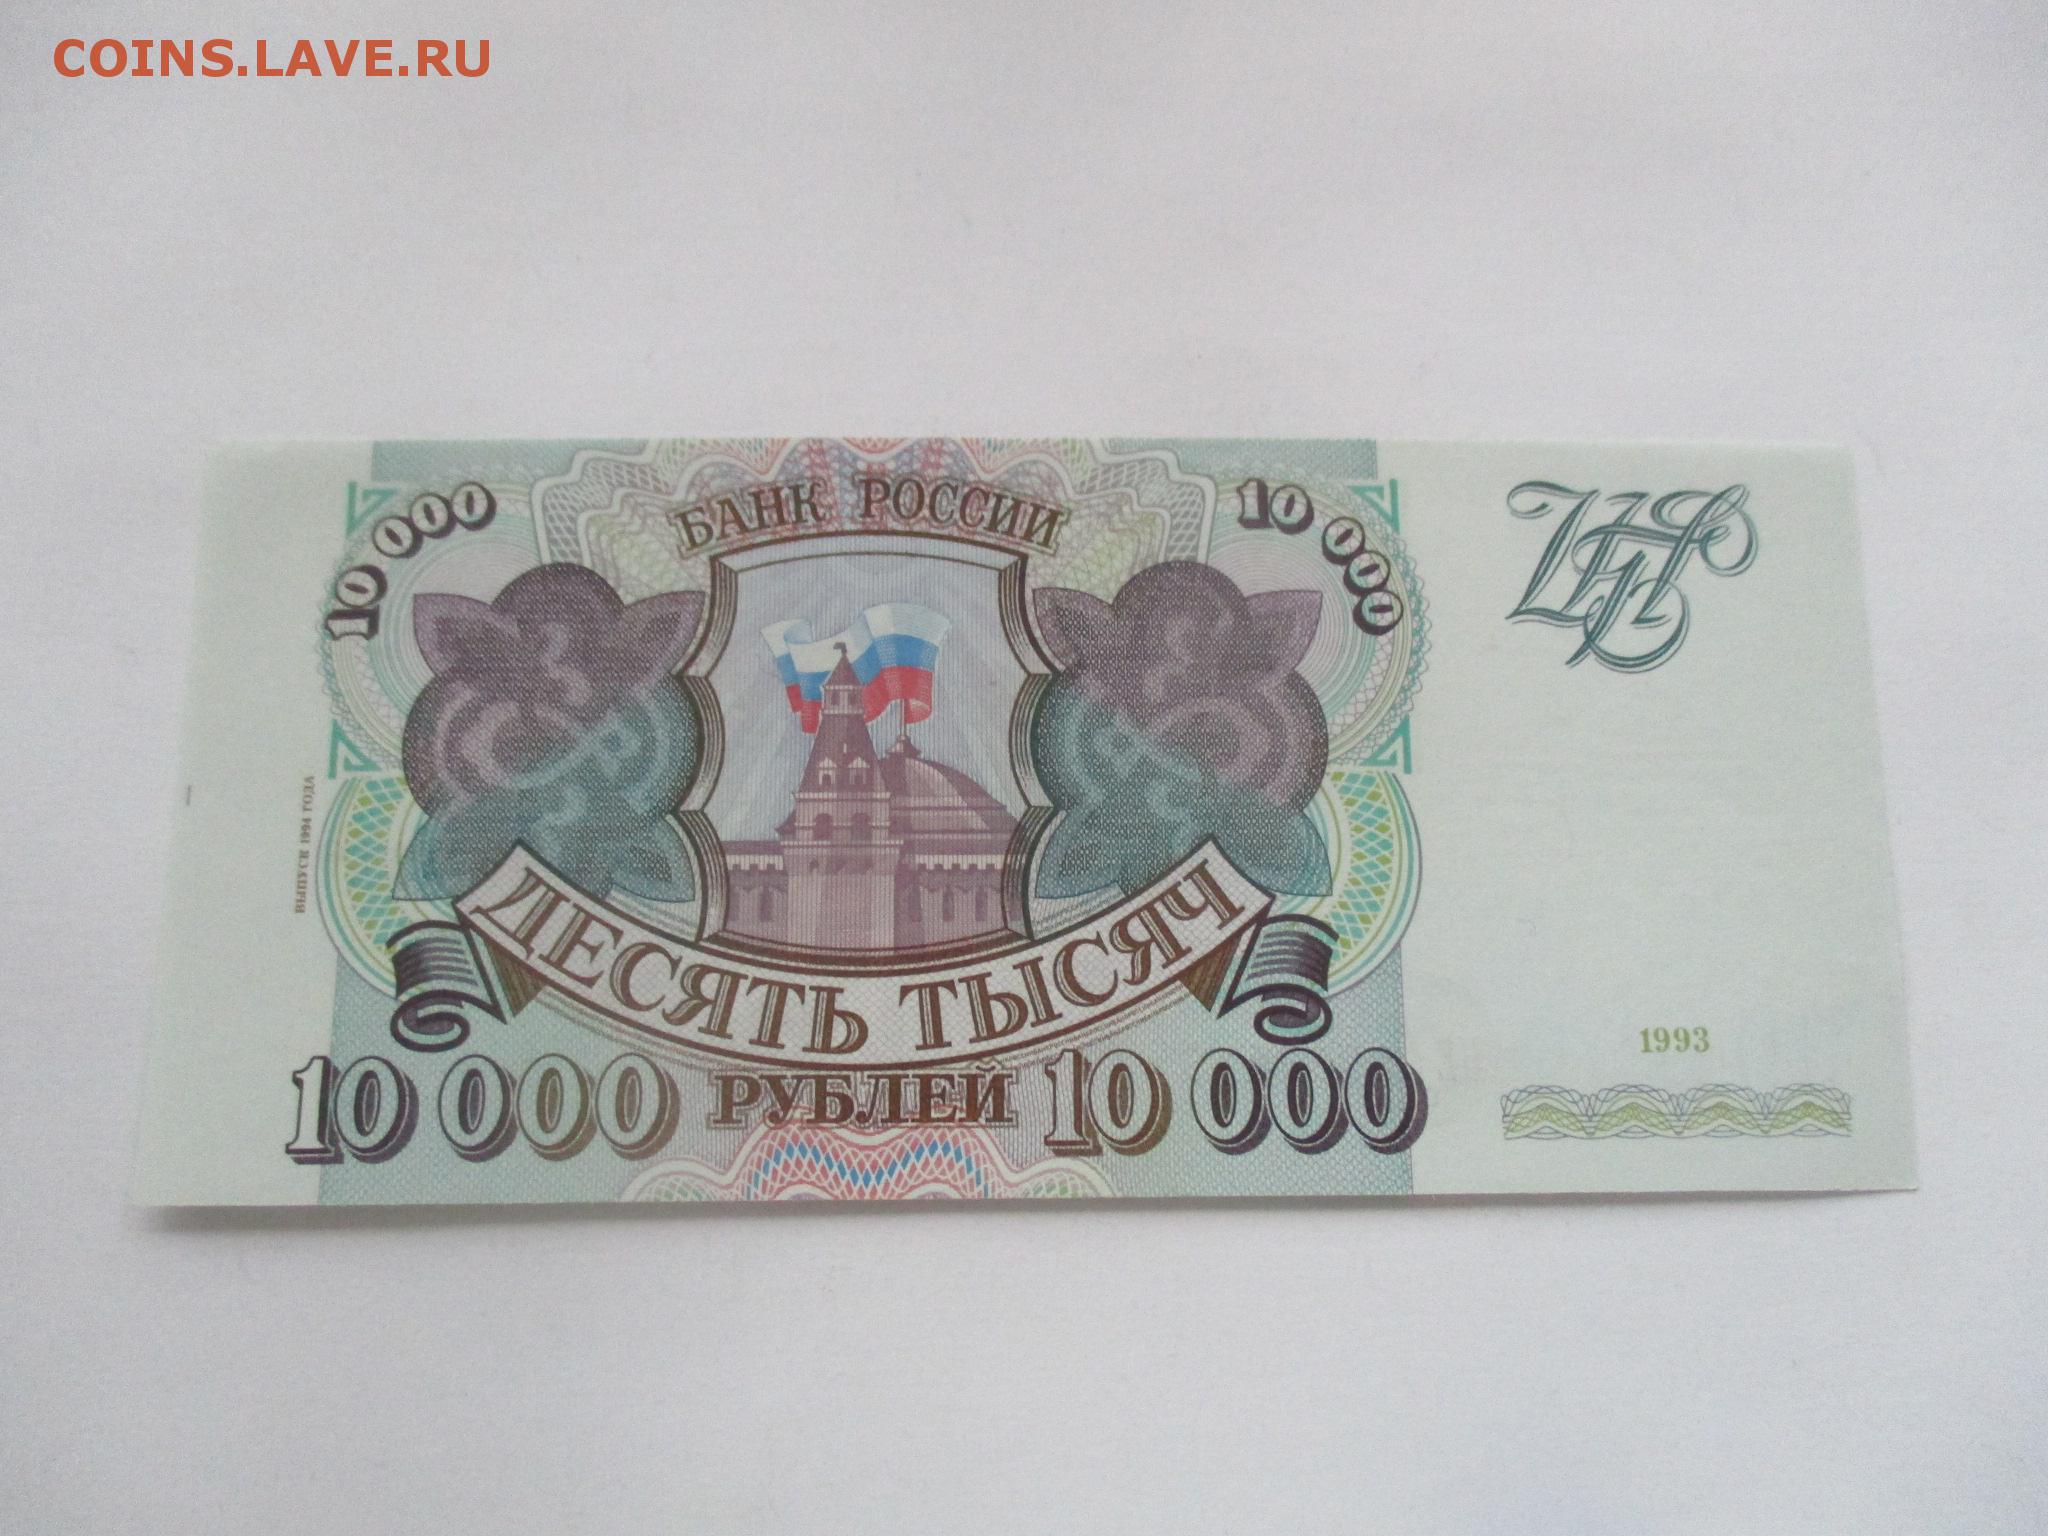 3 рубля 1993. 10000 Рублей 1994 года. 10000 1993 Года. 10000 Рублей модификация 1994 года. Билет банка России 1994 года.